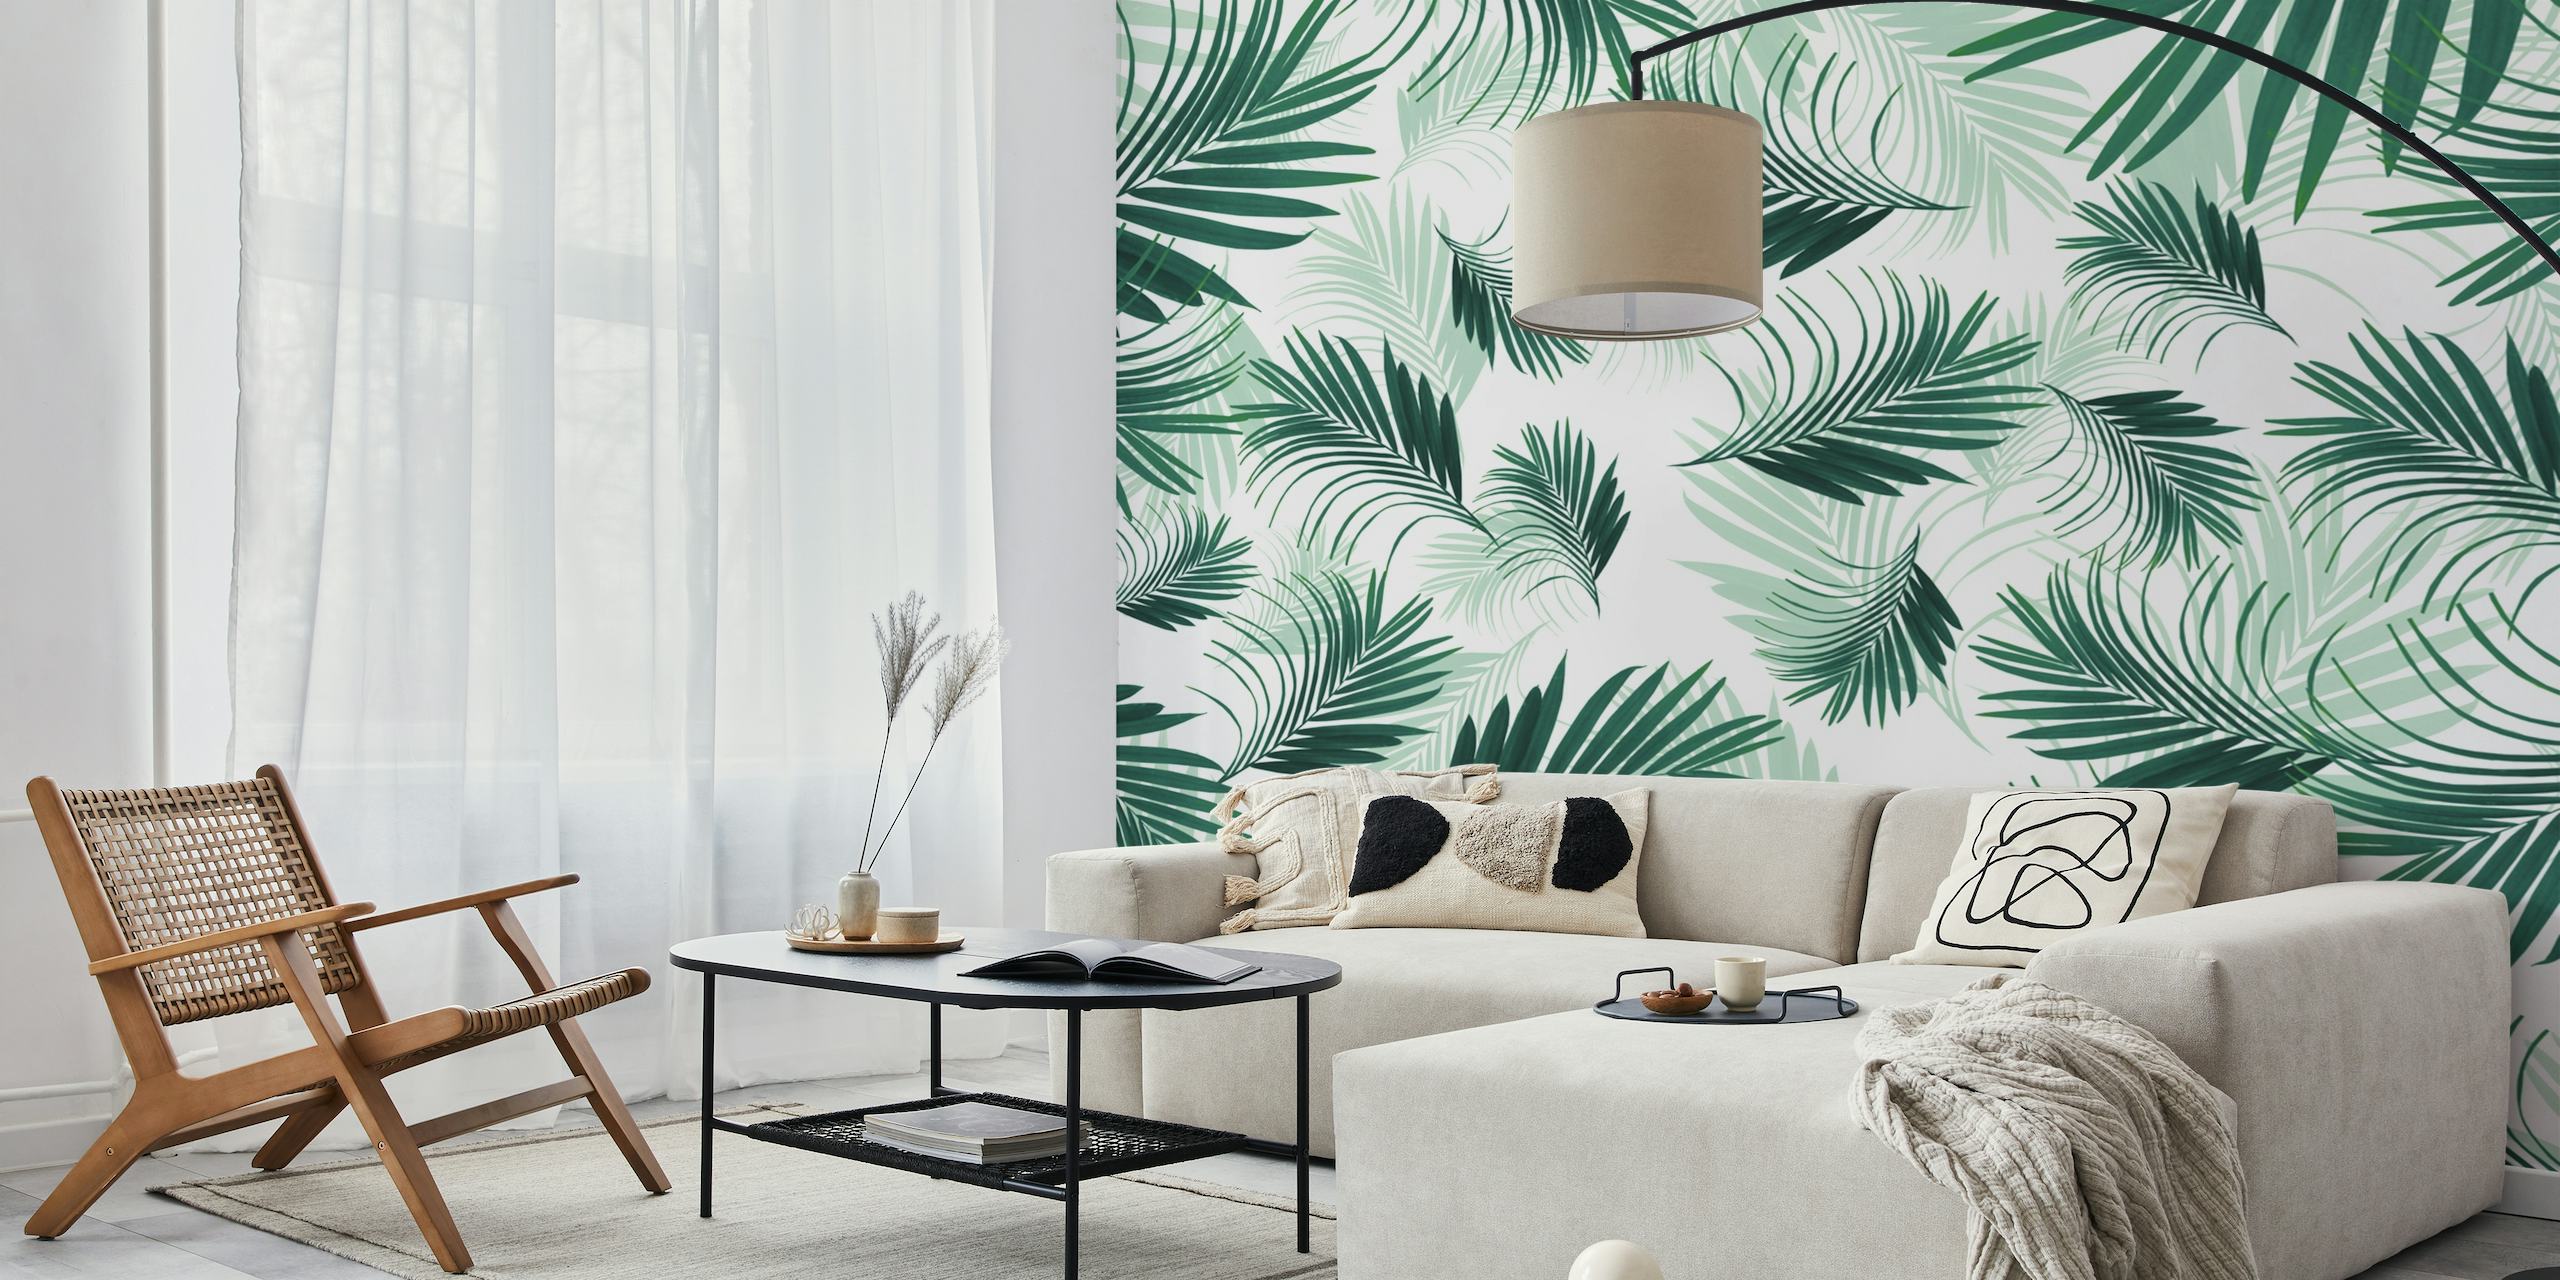 Decorazione murale con palme verdi tropicali vibranti per un arredamento ispirato alla natura